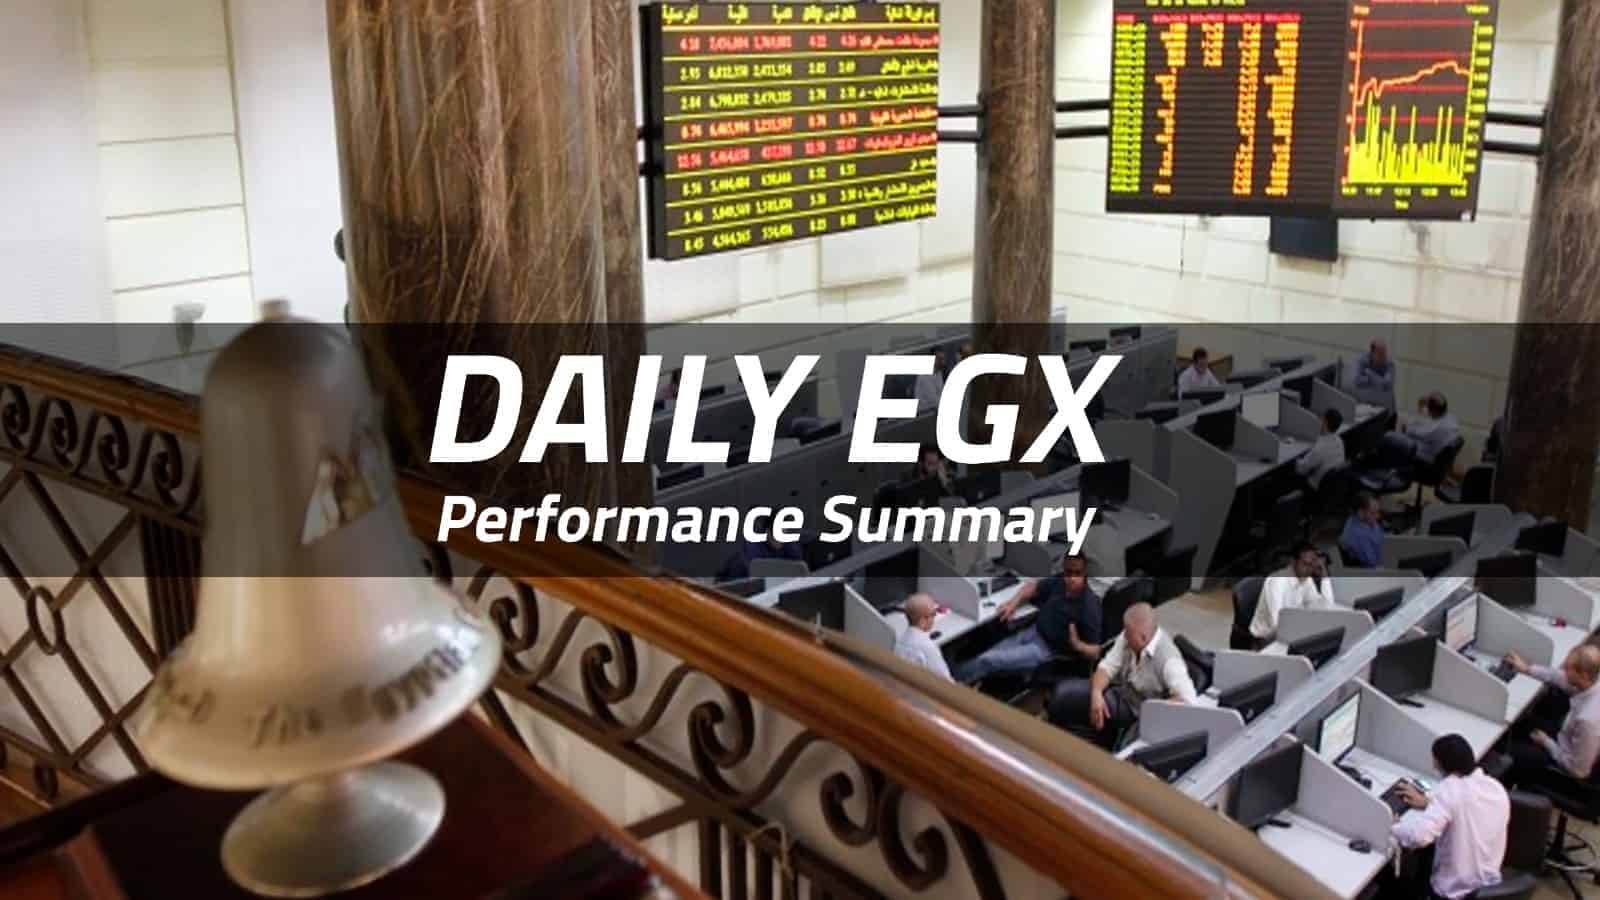 EGX sees bearish trend on Tuesday